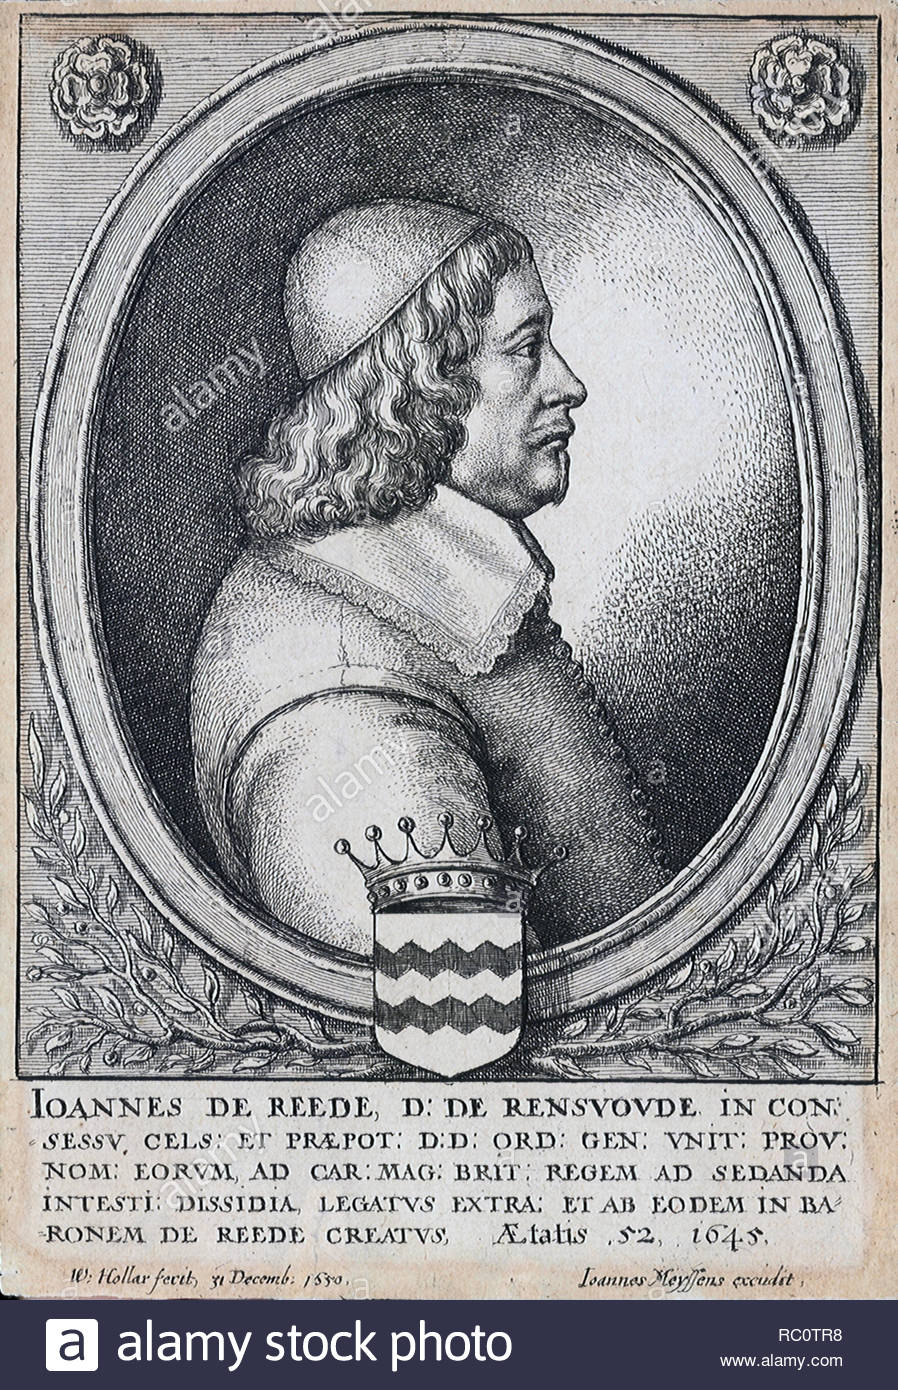 Johan van Reede van Renswoude, noto in Gran Bretagna come Giovanni de Reede, primo Baron Reede,1593 - 1682 era un diplomatico olandese e politico. Egli divenne un canonico o il diacono nella cattedrale di Utrecht nel 1620, ma nel 1623 ha acquisito il titolo e le terre di Renswoude, e fu eletto al States-General di Olanda, attacco da incisore boemo Wenceslaus Hollar dal 1650 Foto Stock